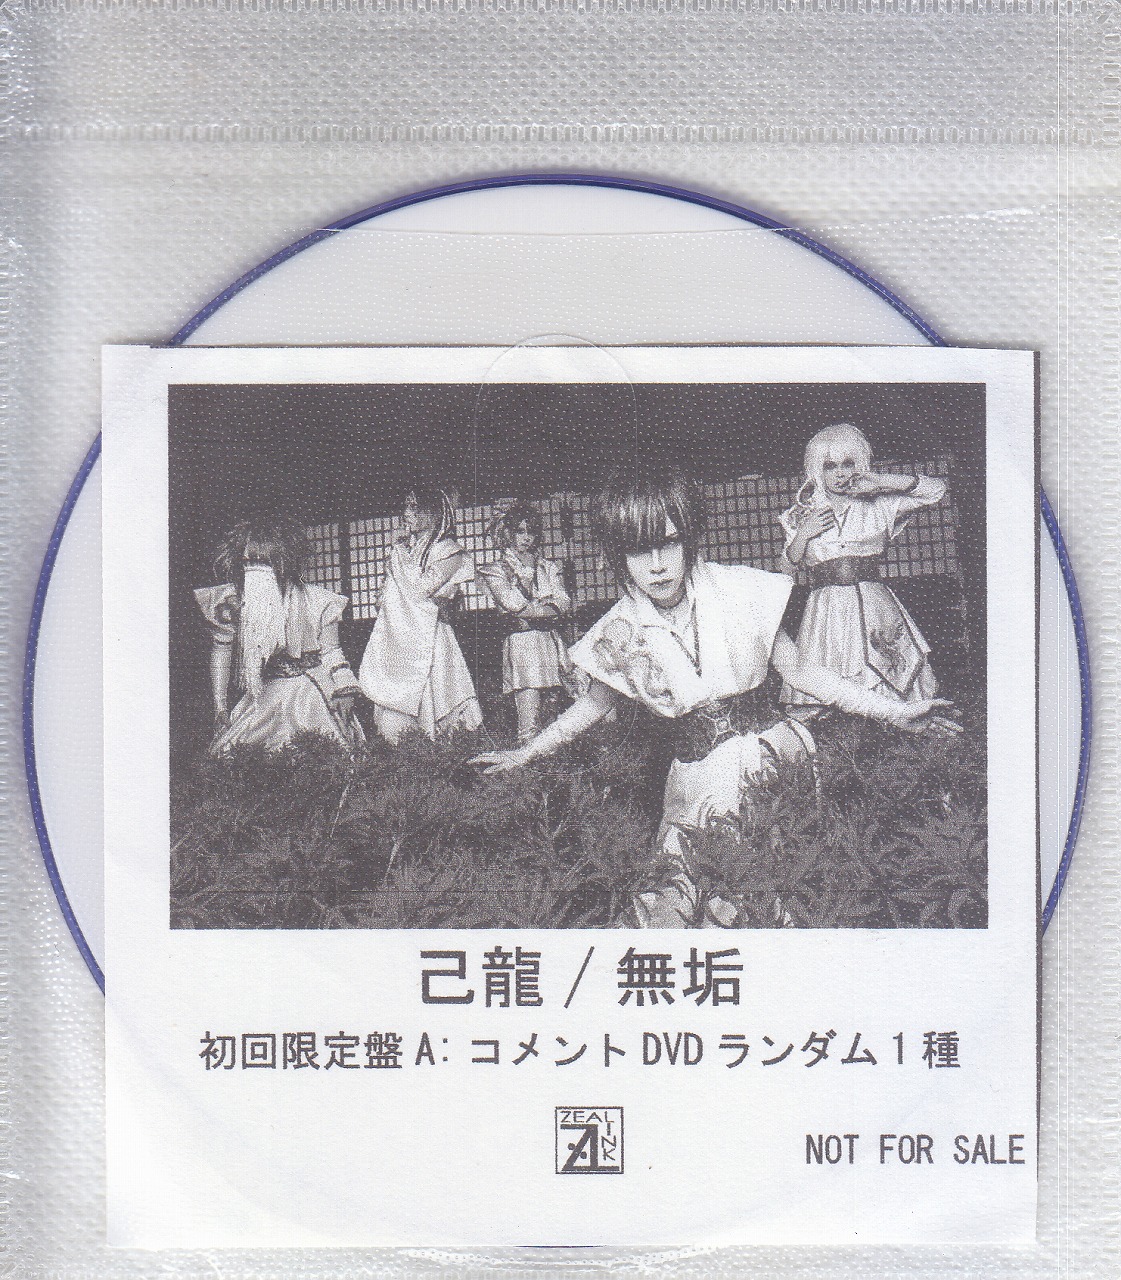 己龍 ( キリュウ )  の DVD 【ZEAL LINK】無垢 初回限定盤A:コメントDVD